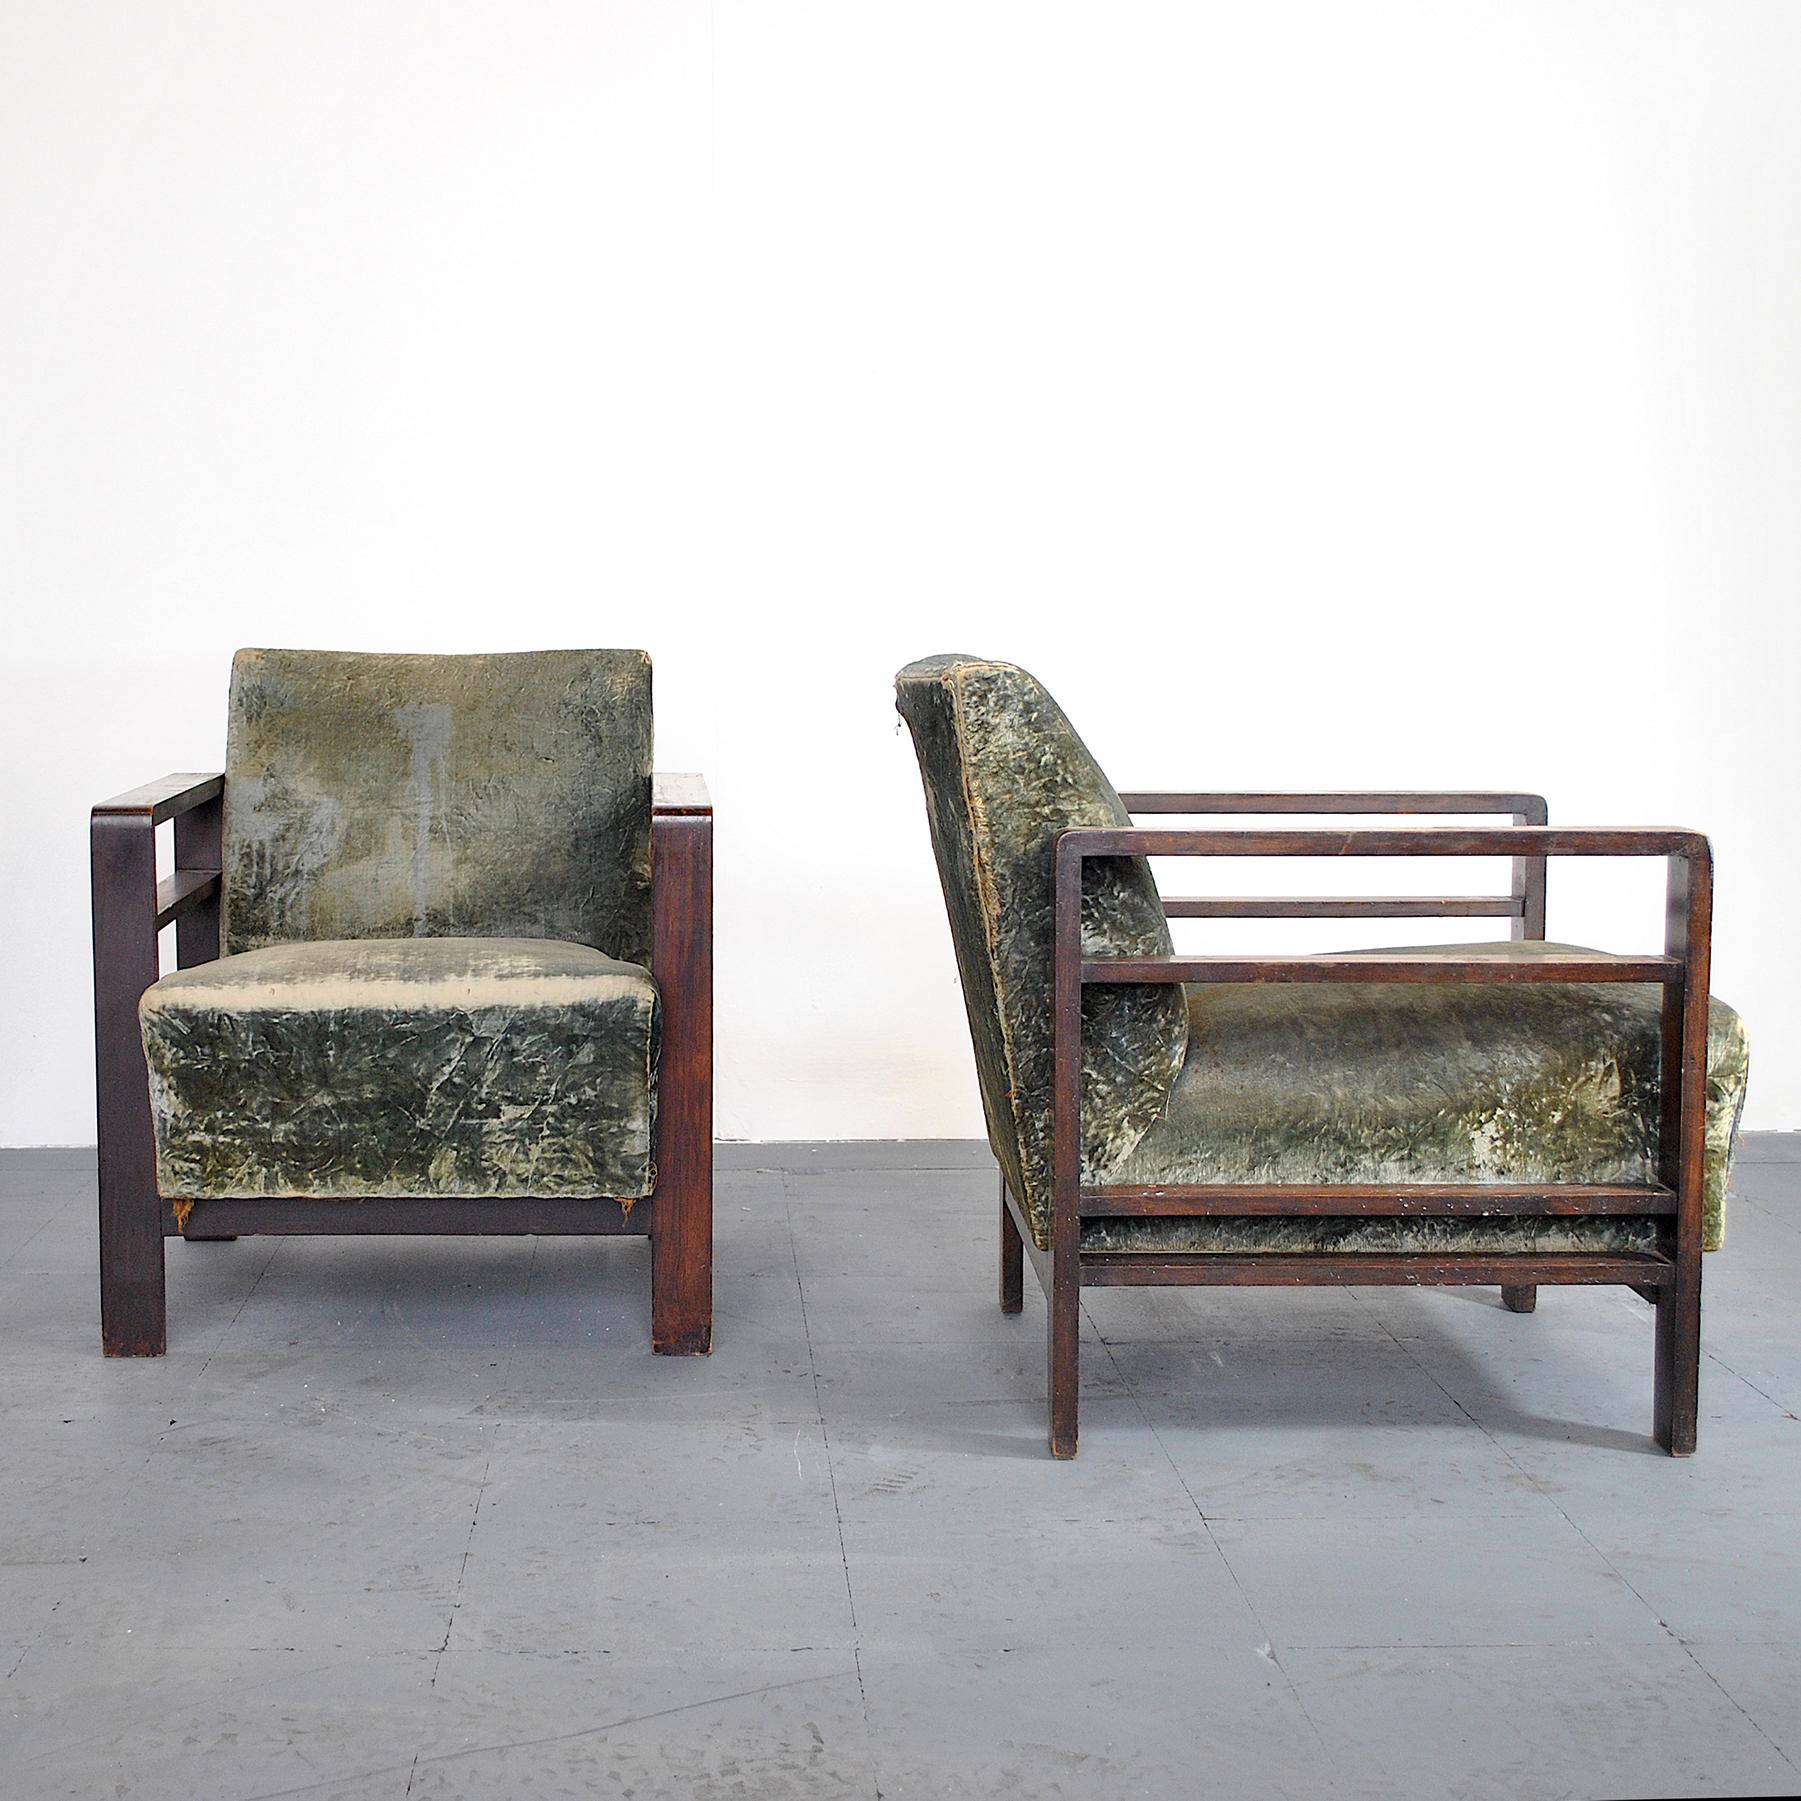 Paire de fauteuils du début des années 1940 en pur style rationaliste italien Giuseppe Pagano.

Giuseppe Pogatschnig Pagano (1896-1945), architecte et designer d'origine istrienne, est un représentant du rationalisme italien.

Parmi ses projets